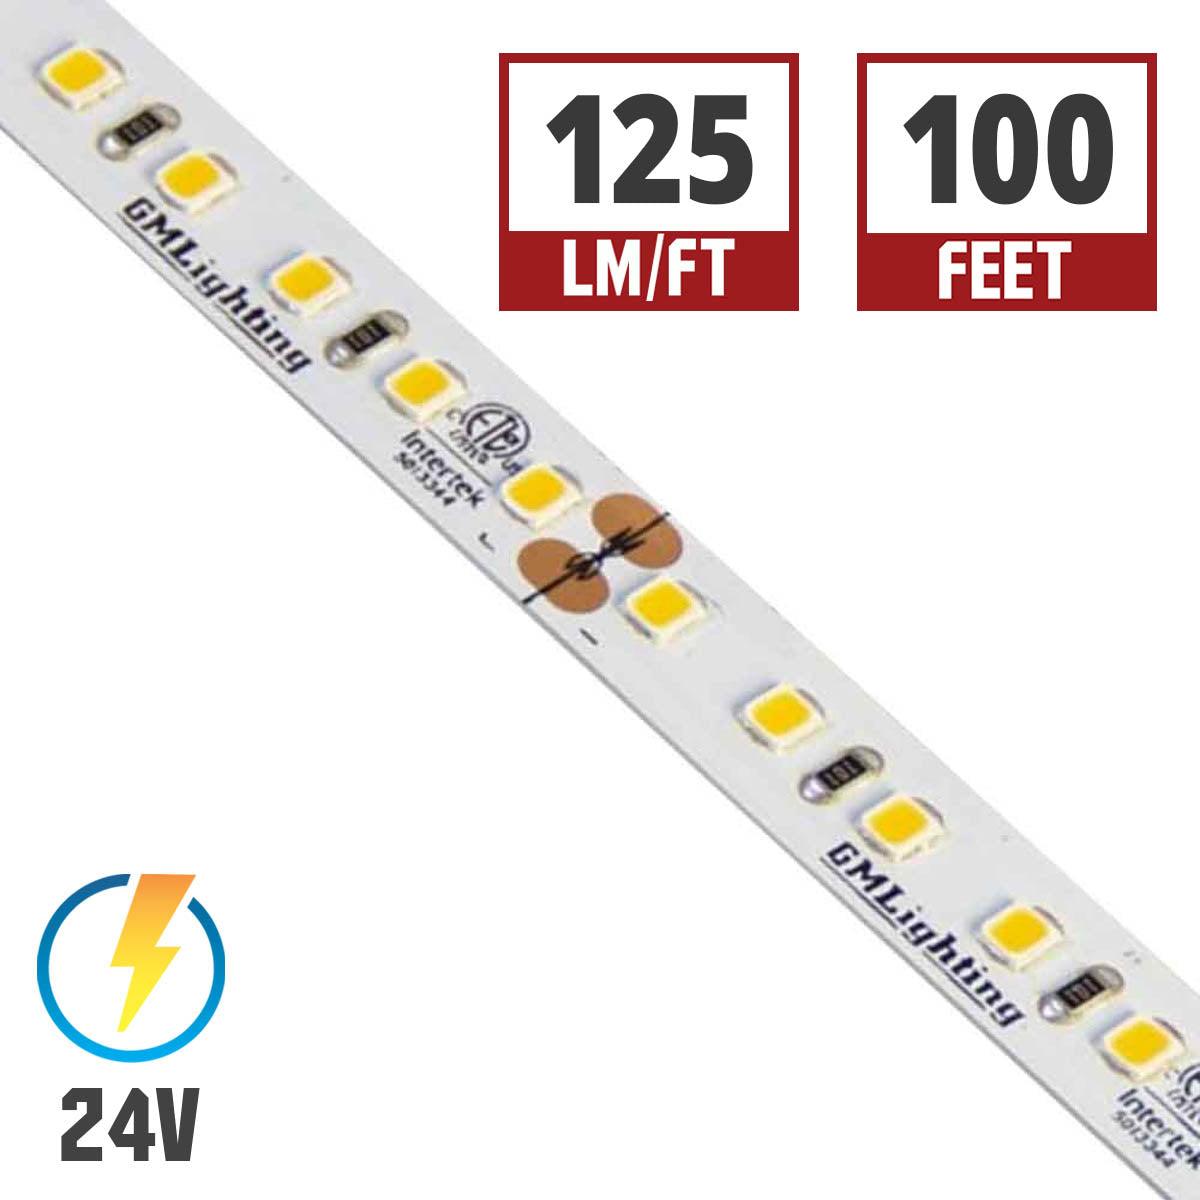 LTR-P Pro LED Strip Light, 1.5 Watts per Ft, 140 Lumens per Ft, 24V - Bees Lighting